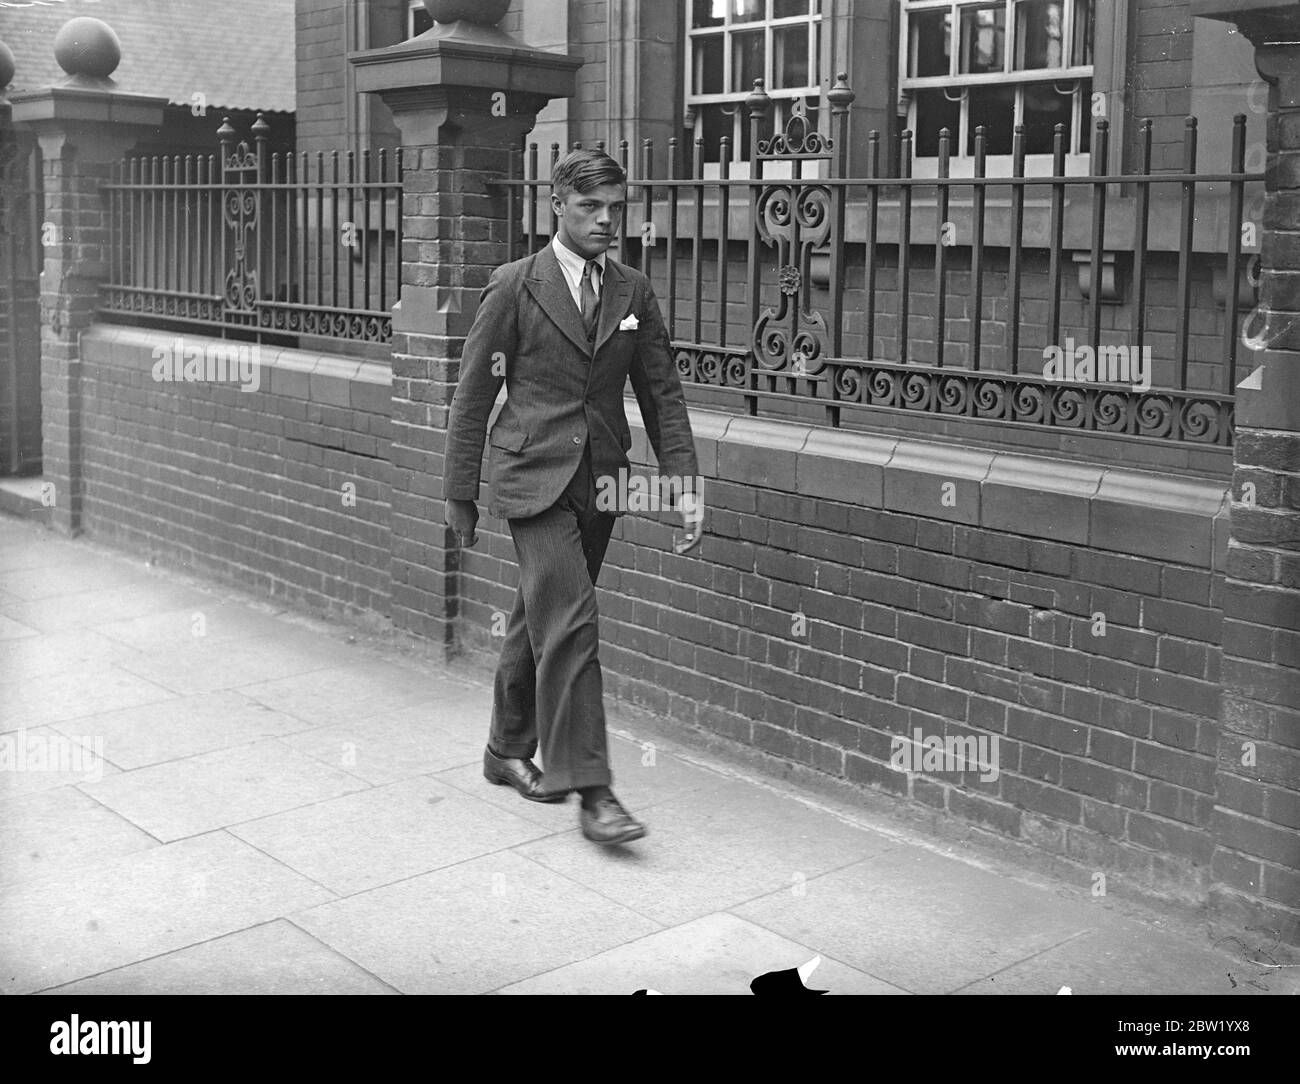 Der Mann wurde verhaftet, nachdem die Leiche von Daisy Vera Skeels, einer 16-jährigen Kellnerin, exhumiert wurde, um sie zu einer Untersuchung zu bringen. Andrew Chumley wurde wegen des Manschlachts auf dem Coroners-Haftbefehl in Gewahrsam genommen. Foto zeigt: William Henry Skeels, Bruder des toten Mädchens, der Andrew Chumley beschuldigte, nach der Inquest in Hounslow, London, zu gehen. 18 Juni 1937 Stockfoto